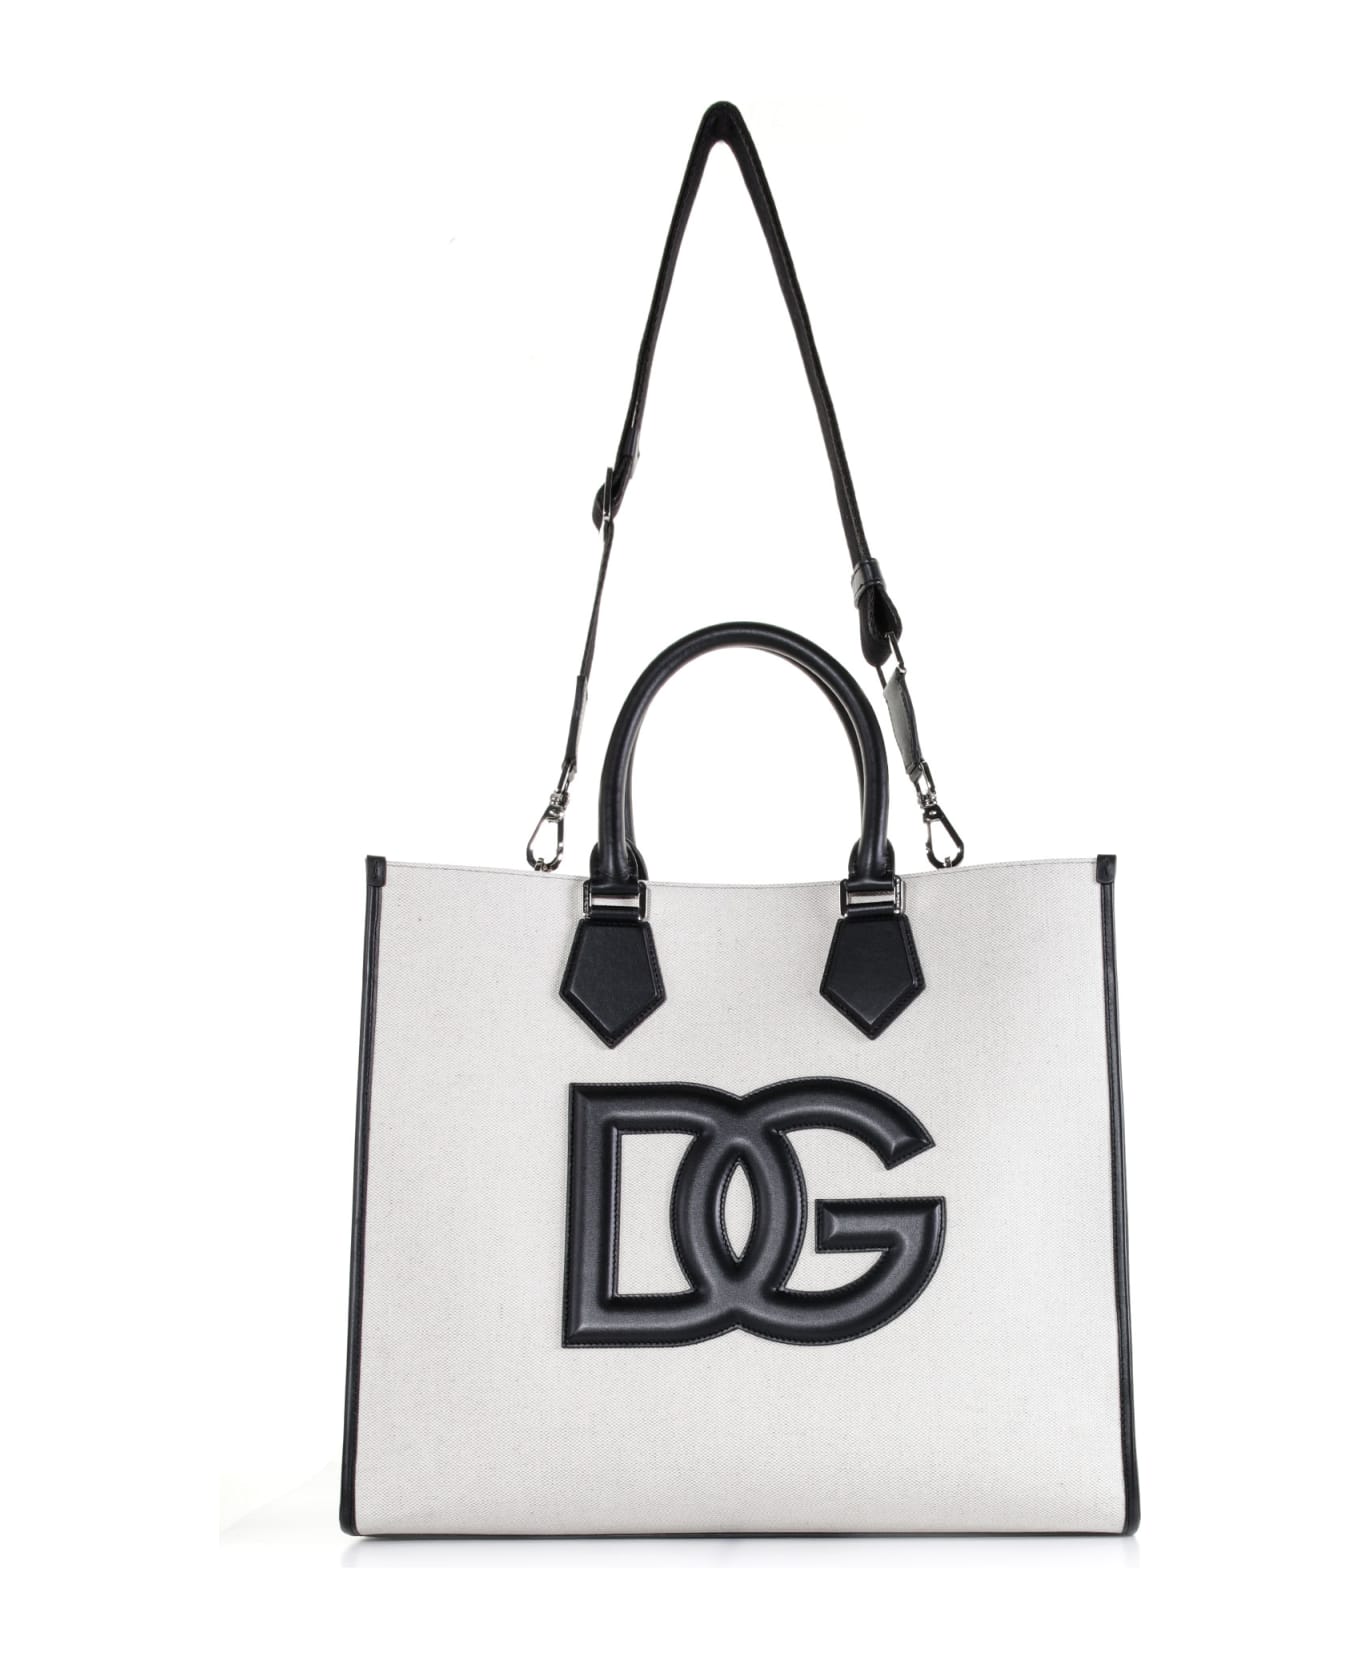 Dolce & Gabbana Canvas Shopping Bag - AVORIO/NERO